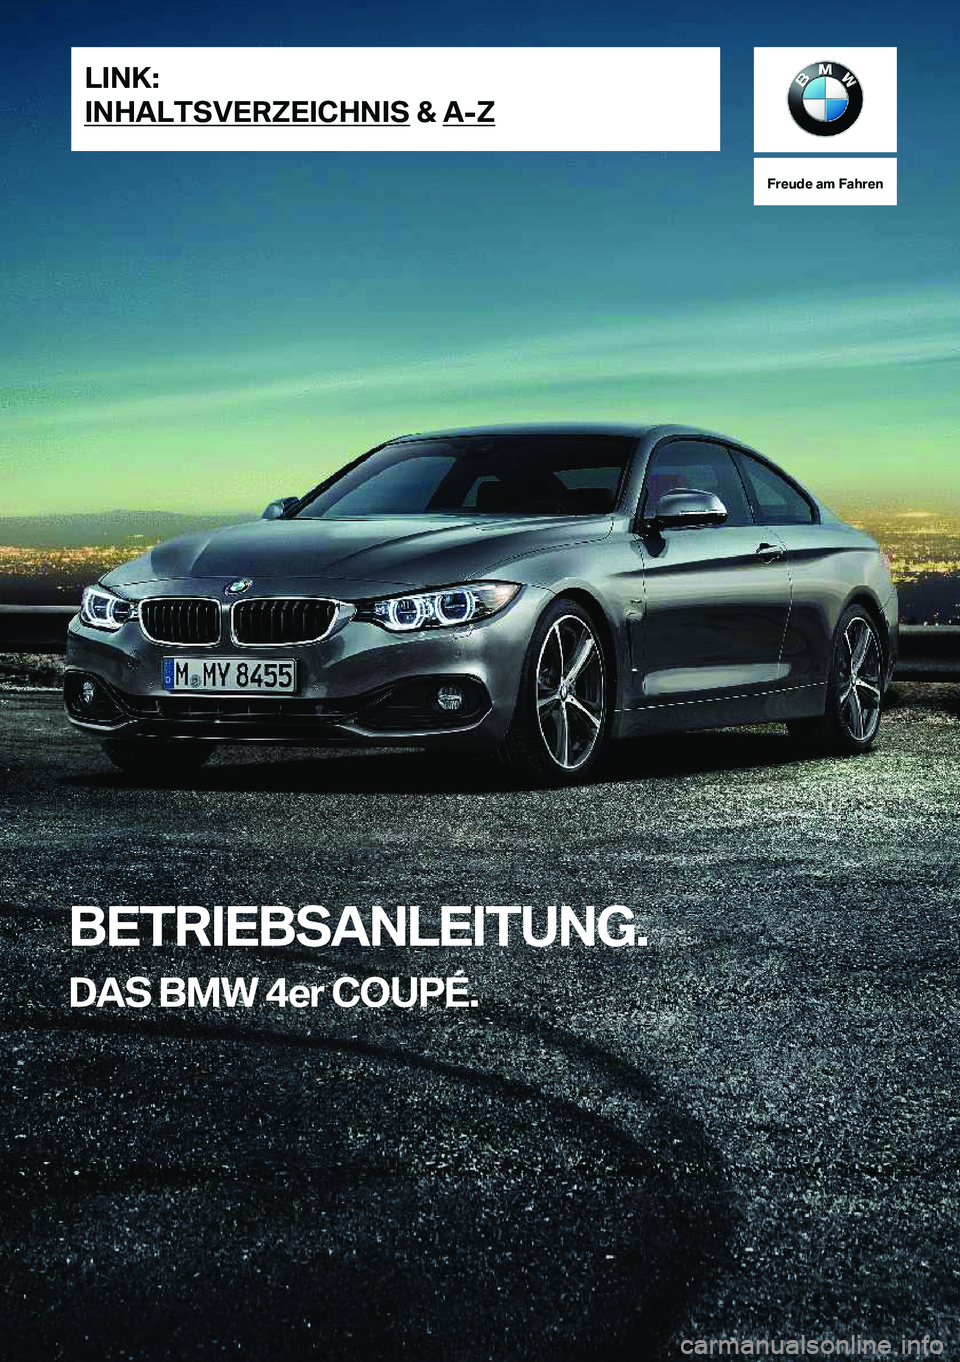 BMW 4 SERIES COUPE 2020  Betriebsanleitungen (in German) �F�r�e�u�d�e��a�m��F�a�h�r�e�n
�B�E�T�R�I�E�B�S�A�N�L�E�I�T�U�N�G�.�D�A�S��B�M�W��4�e�r��C�O�U�P�